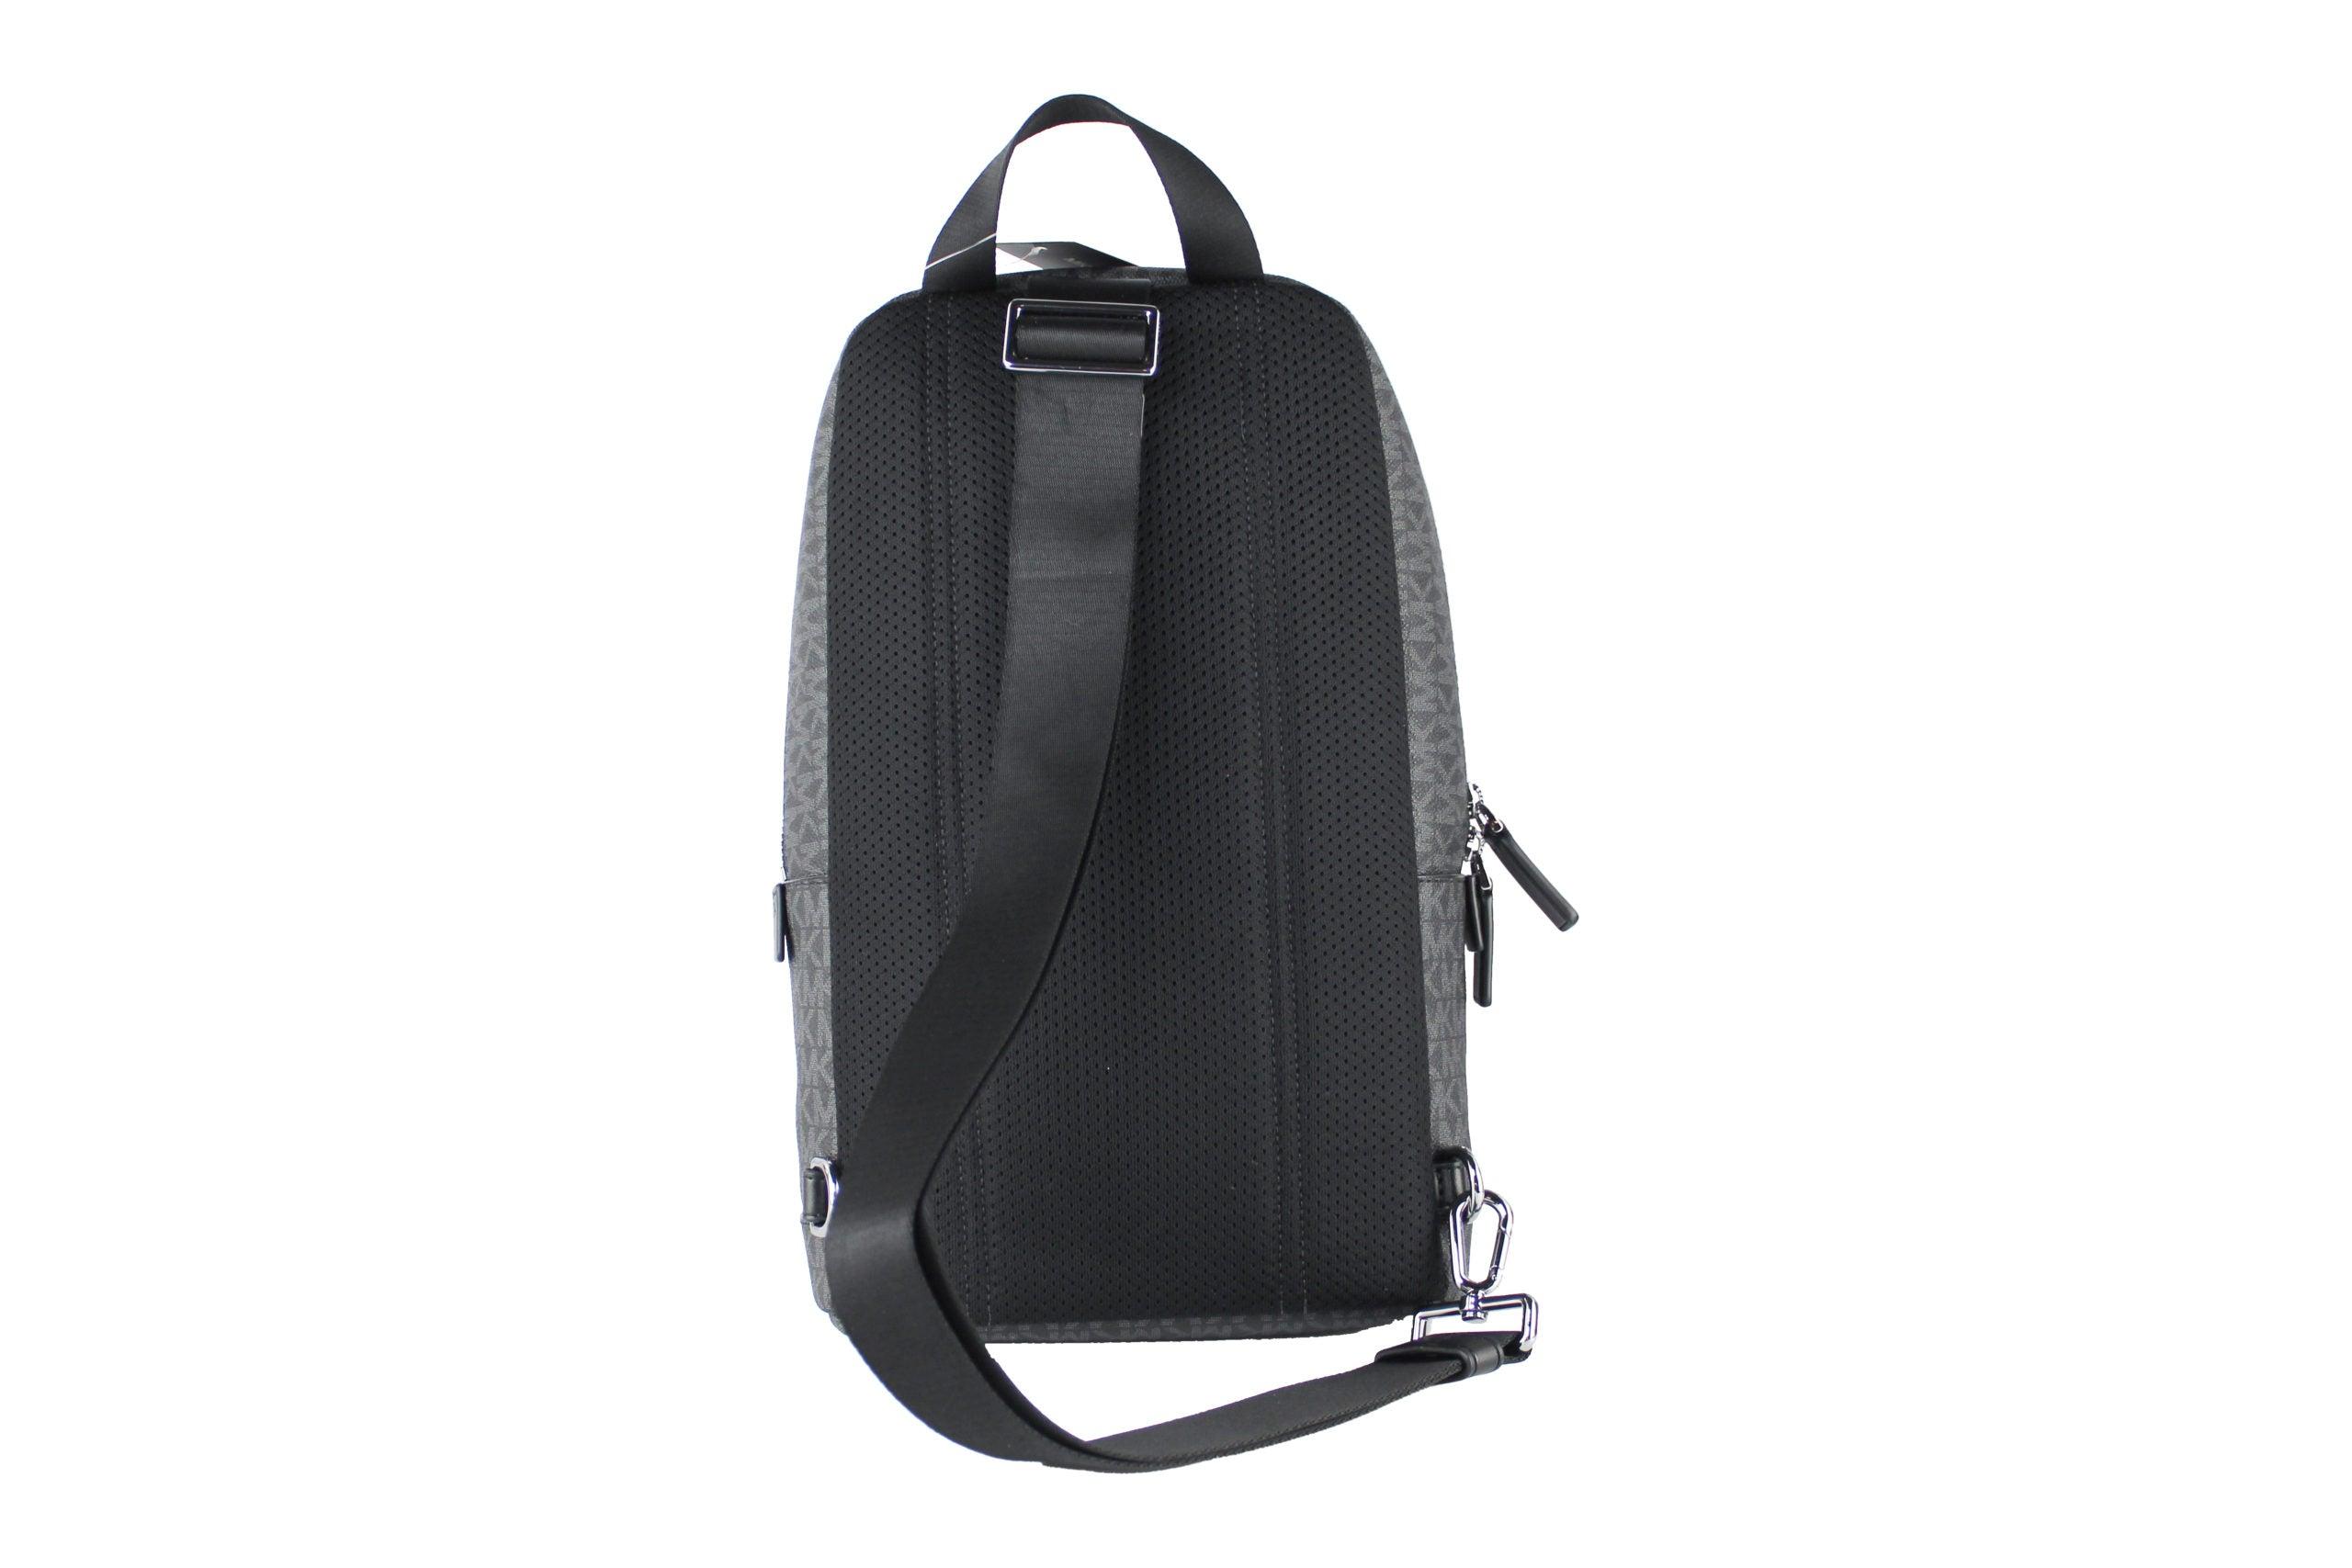 Michael Kors, Bags, New Michael Kors Cooper Logo Backpack Black Signature  Pvc Graphic Bookbag Bag